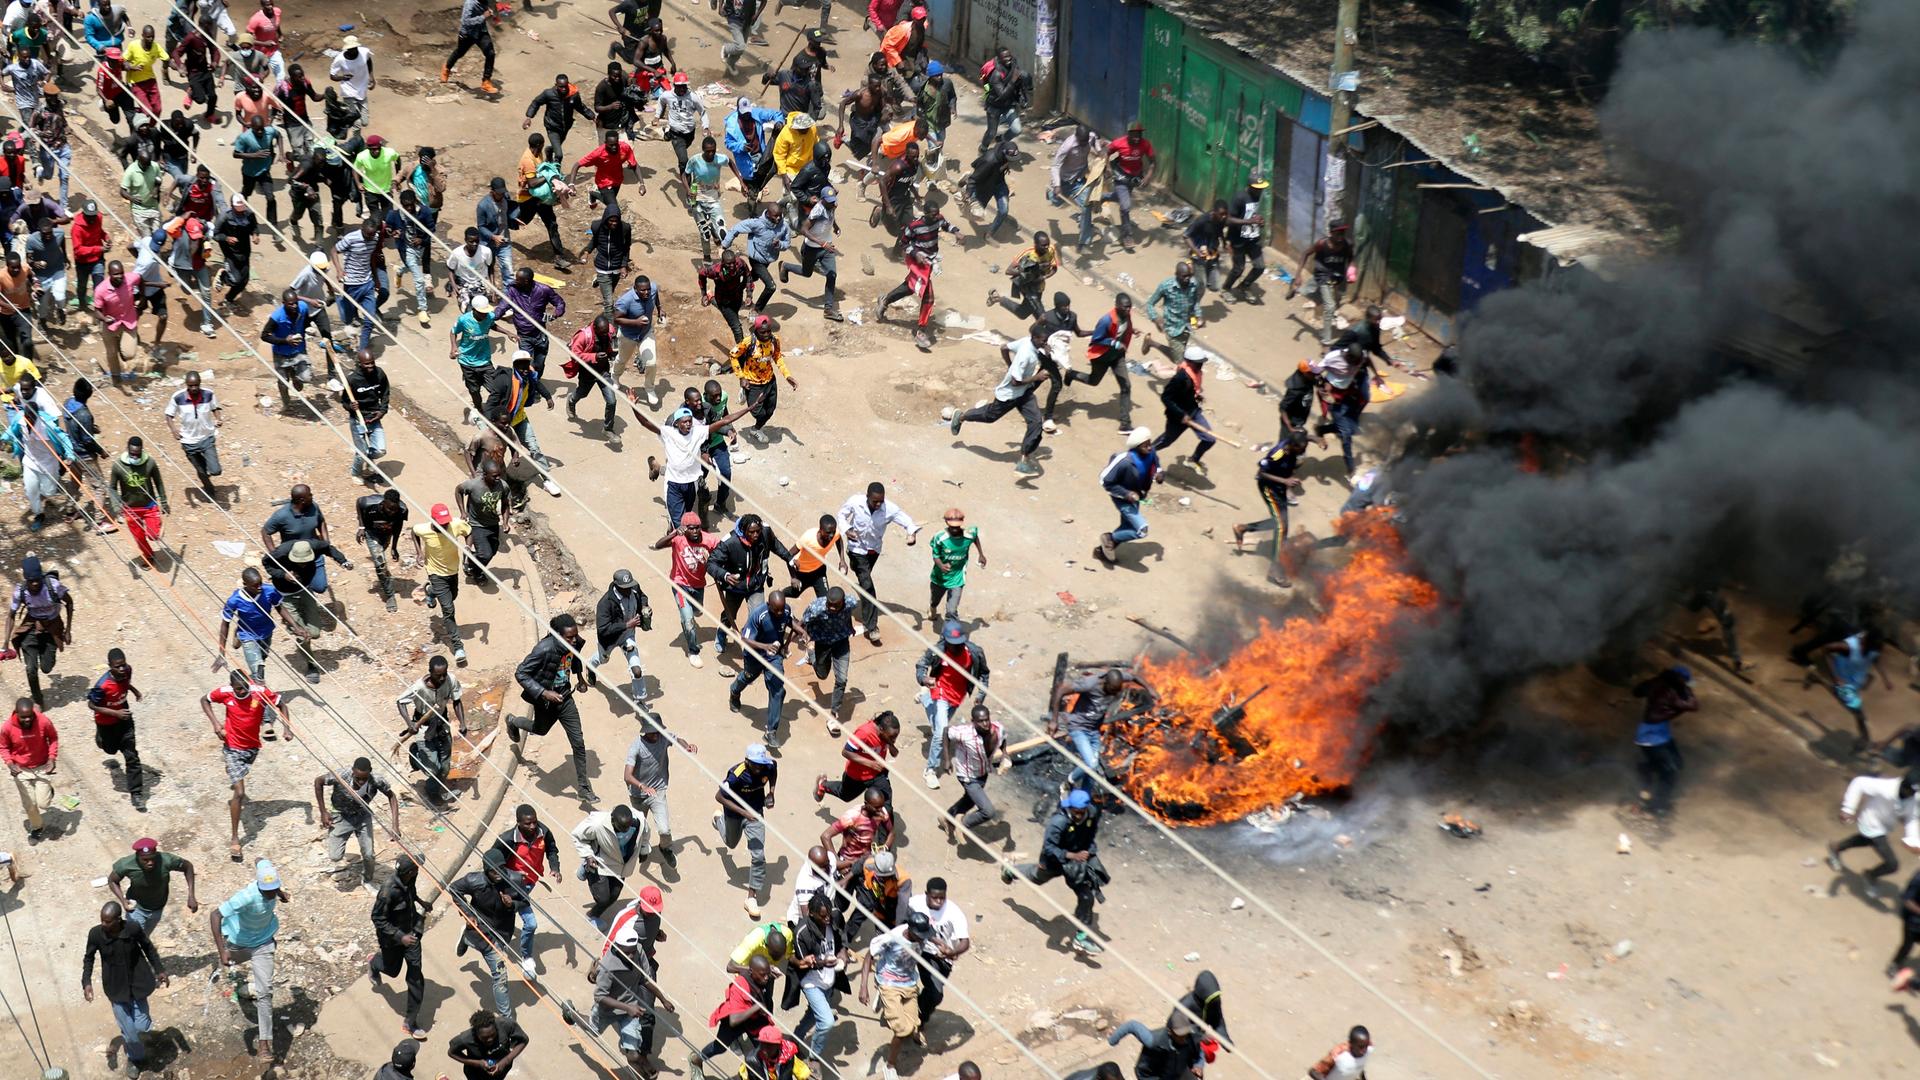 Nairobi: Demonstranten rennen während einer Massenkundgebung, zu der Oppositionsführer Odinga wegen der hohen Lebenshaltungskosten in den Kibera-Slums aufgerufen hat, auf Polizisten zu.